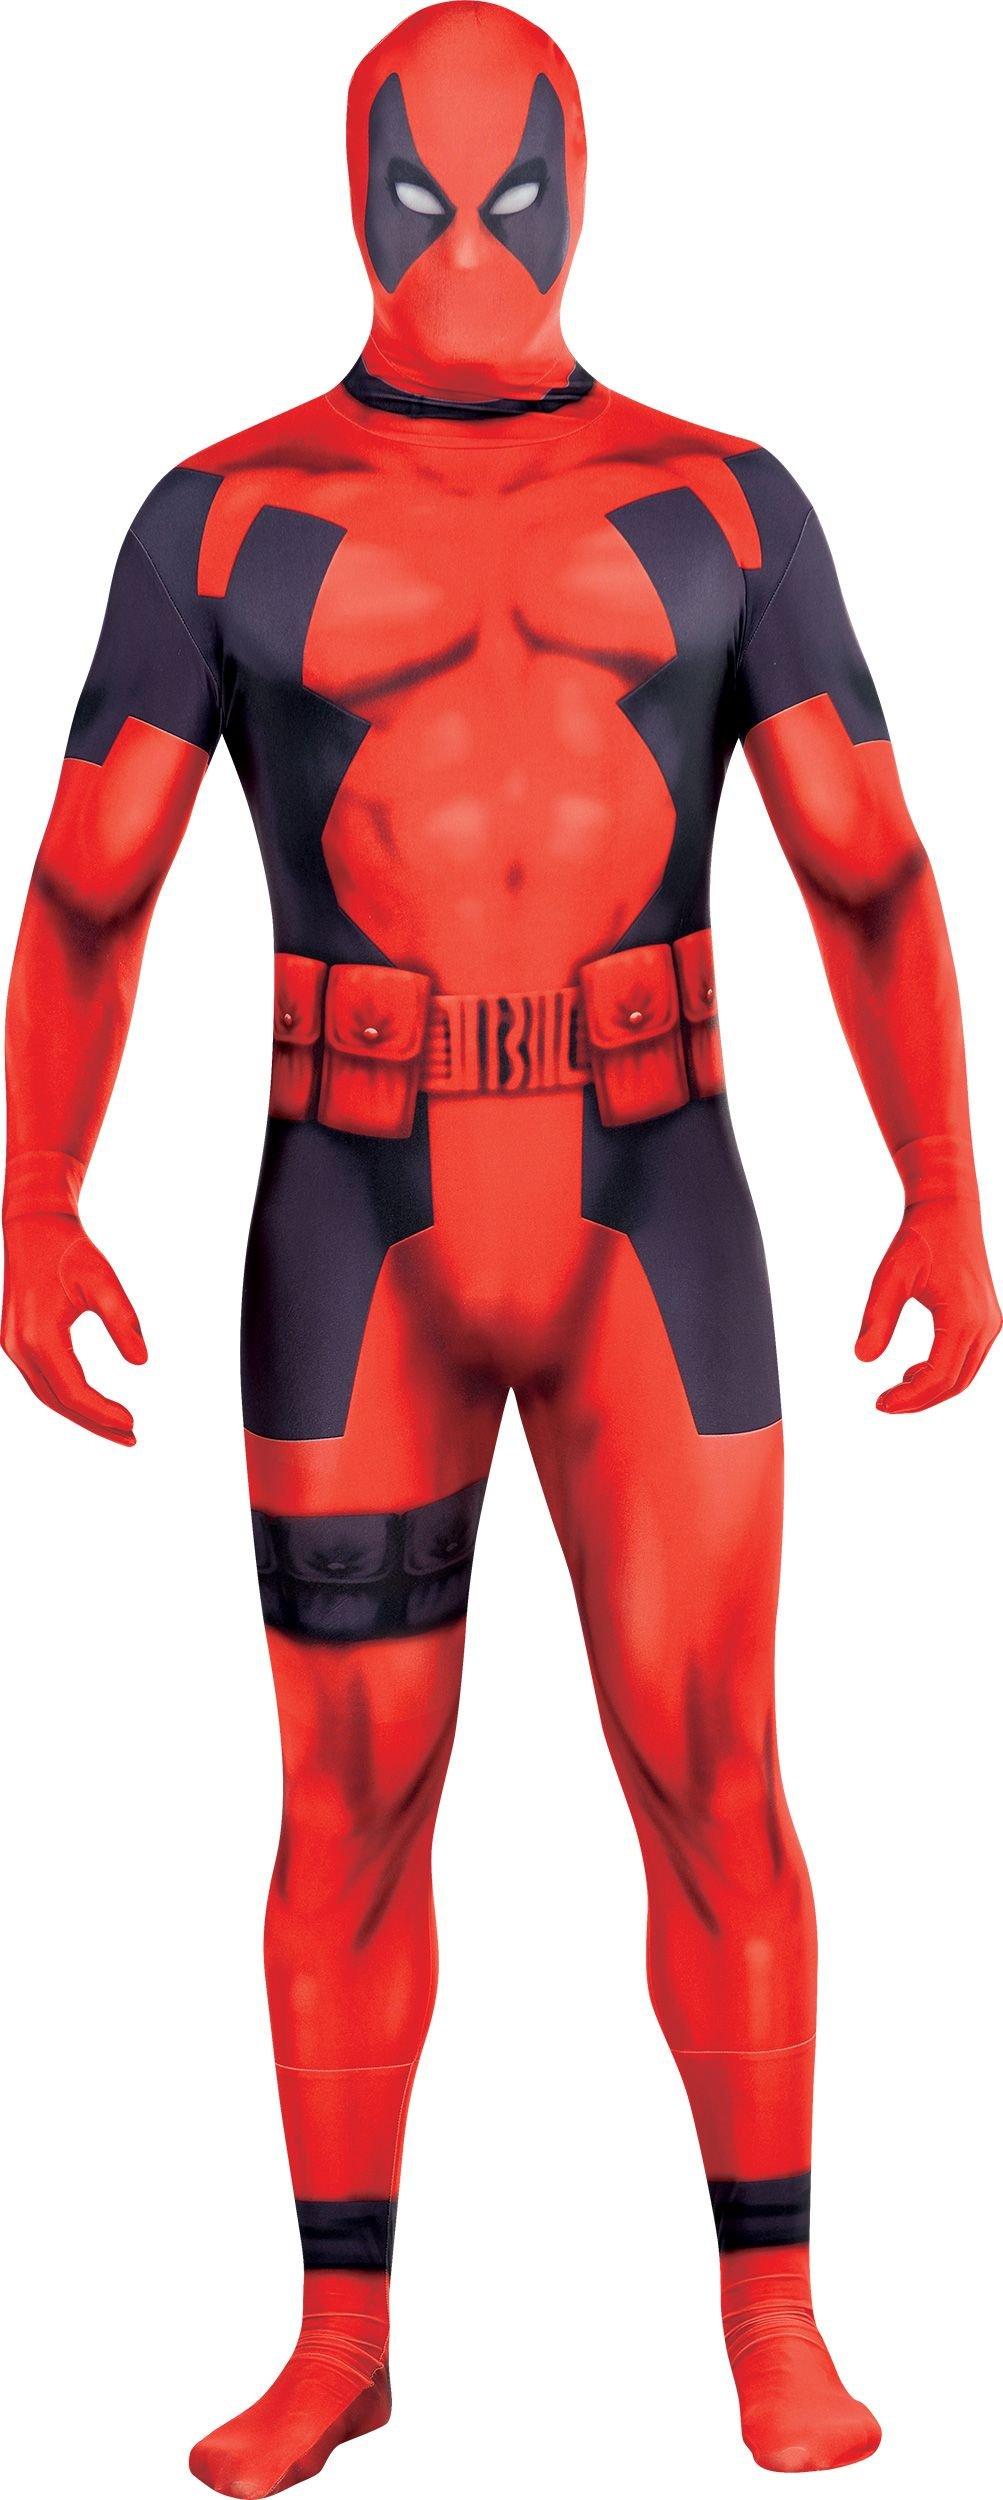 Adult Deadpool Partysuit - Deadpool Costume for Men